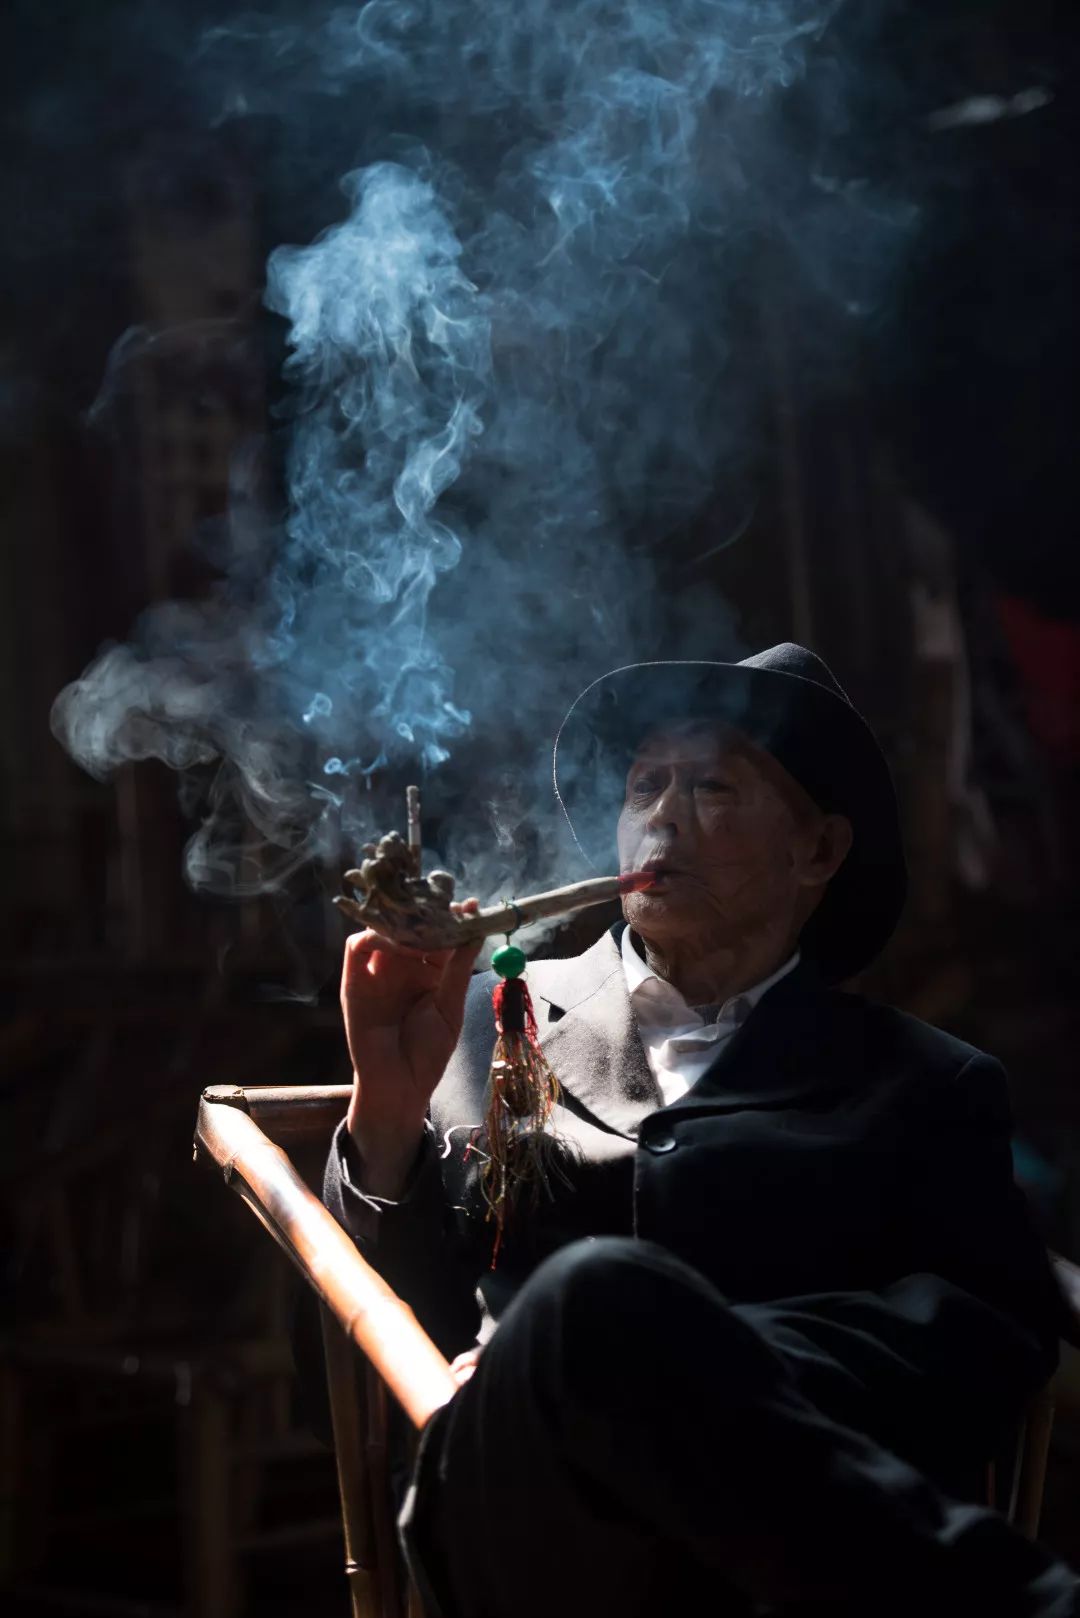 一堆老大爷坐着喝茶聊天下棋,偶然拍到了大爷抽烟时的照片